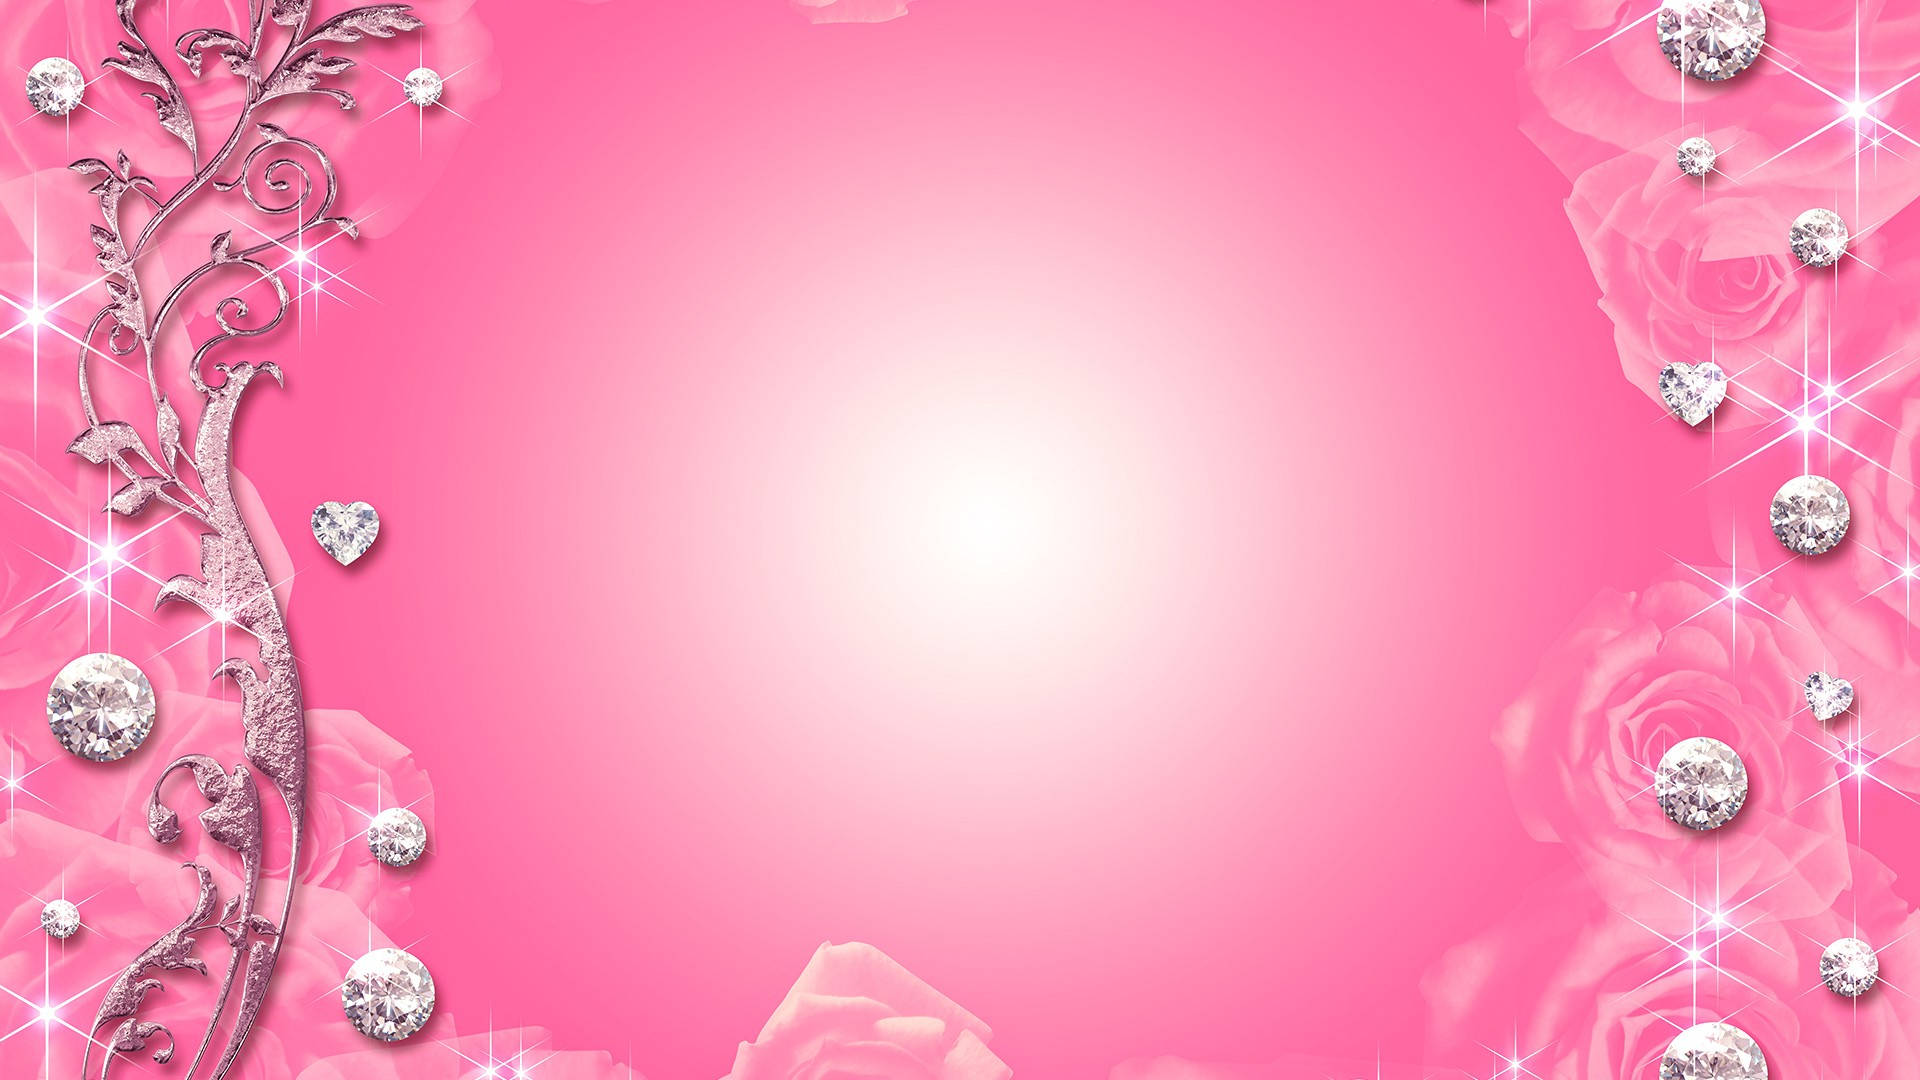 Silver Sparkled Border Pink Background Background